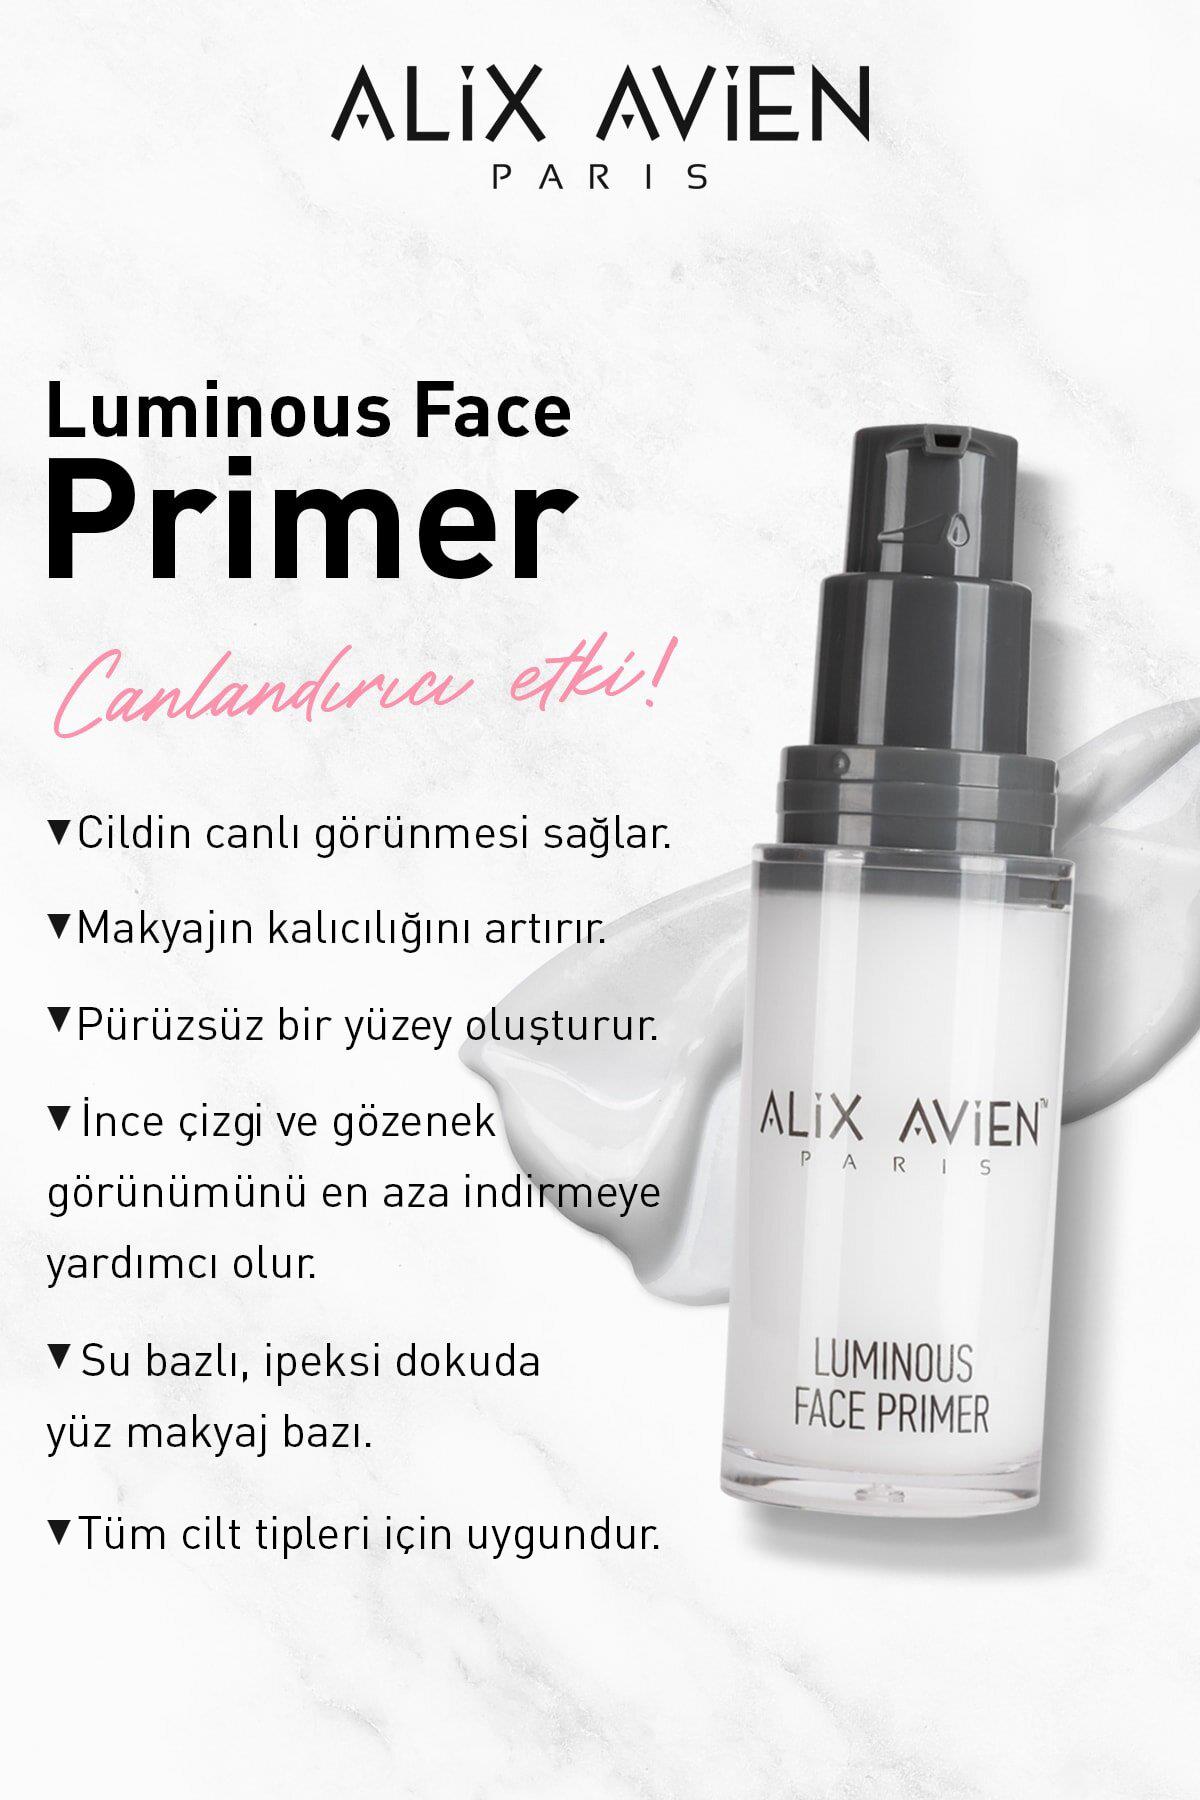 Su Bazlı Makyaj Bazı - Luminous Face Primer - Alix Avien